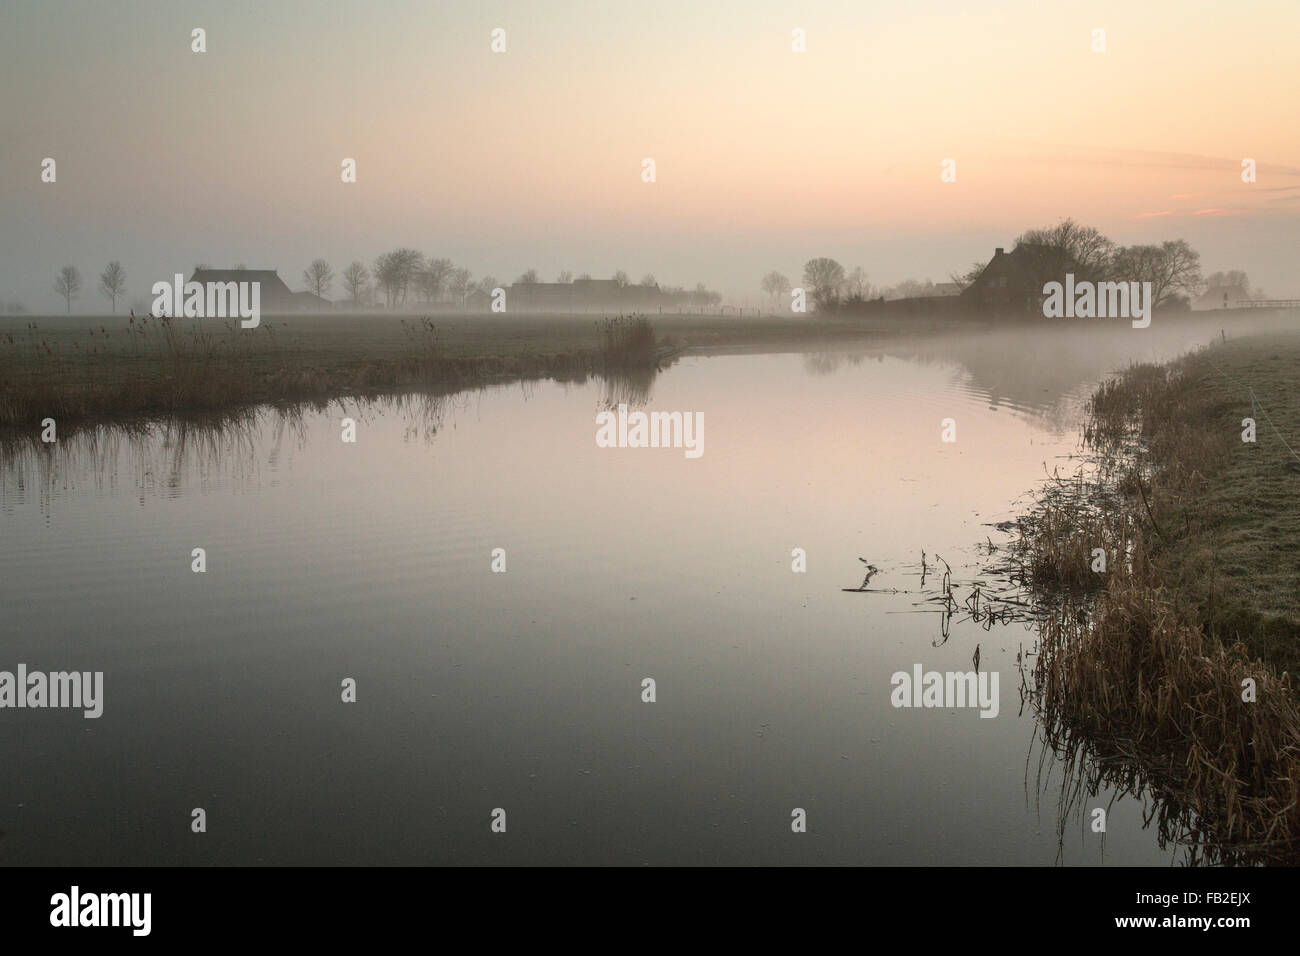 Paesi Bassi, Ee, fattorie vicino torrente chiamato Zuider Ee nella nebbia di mattina Foto Stock